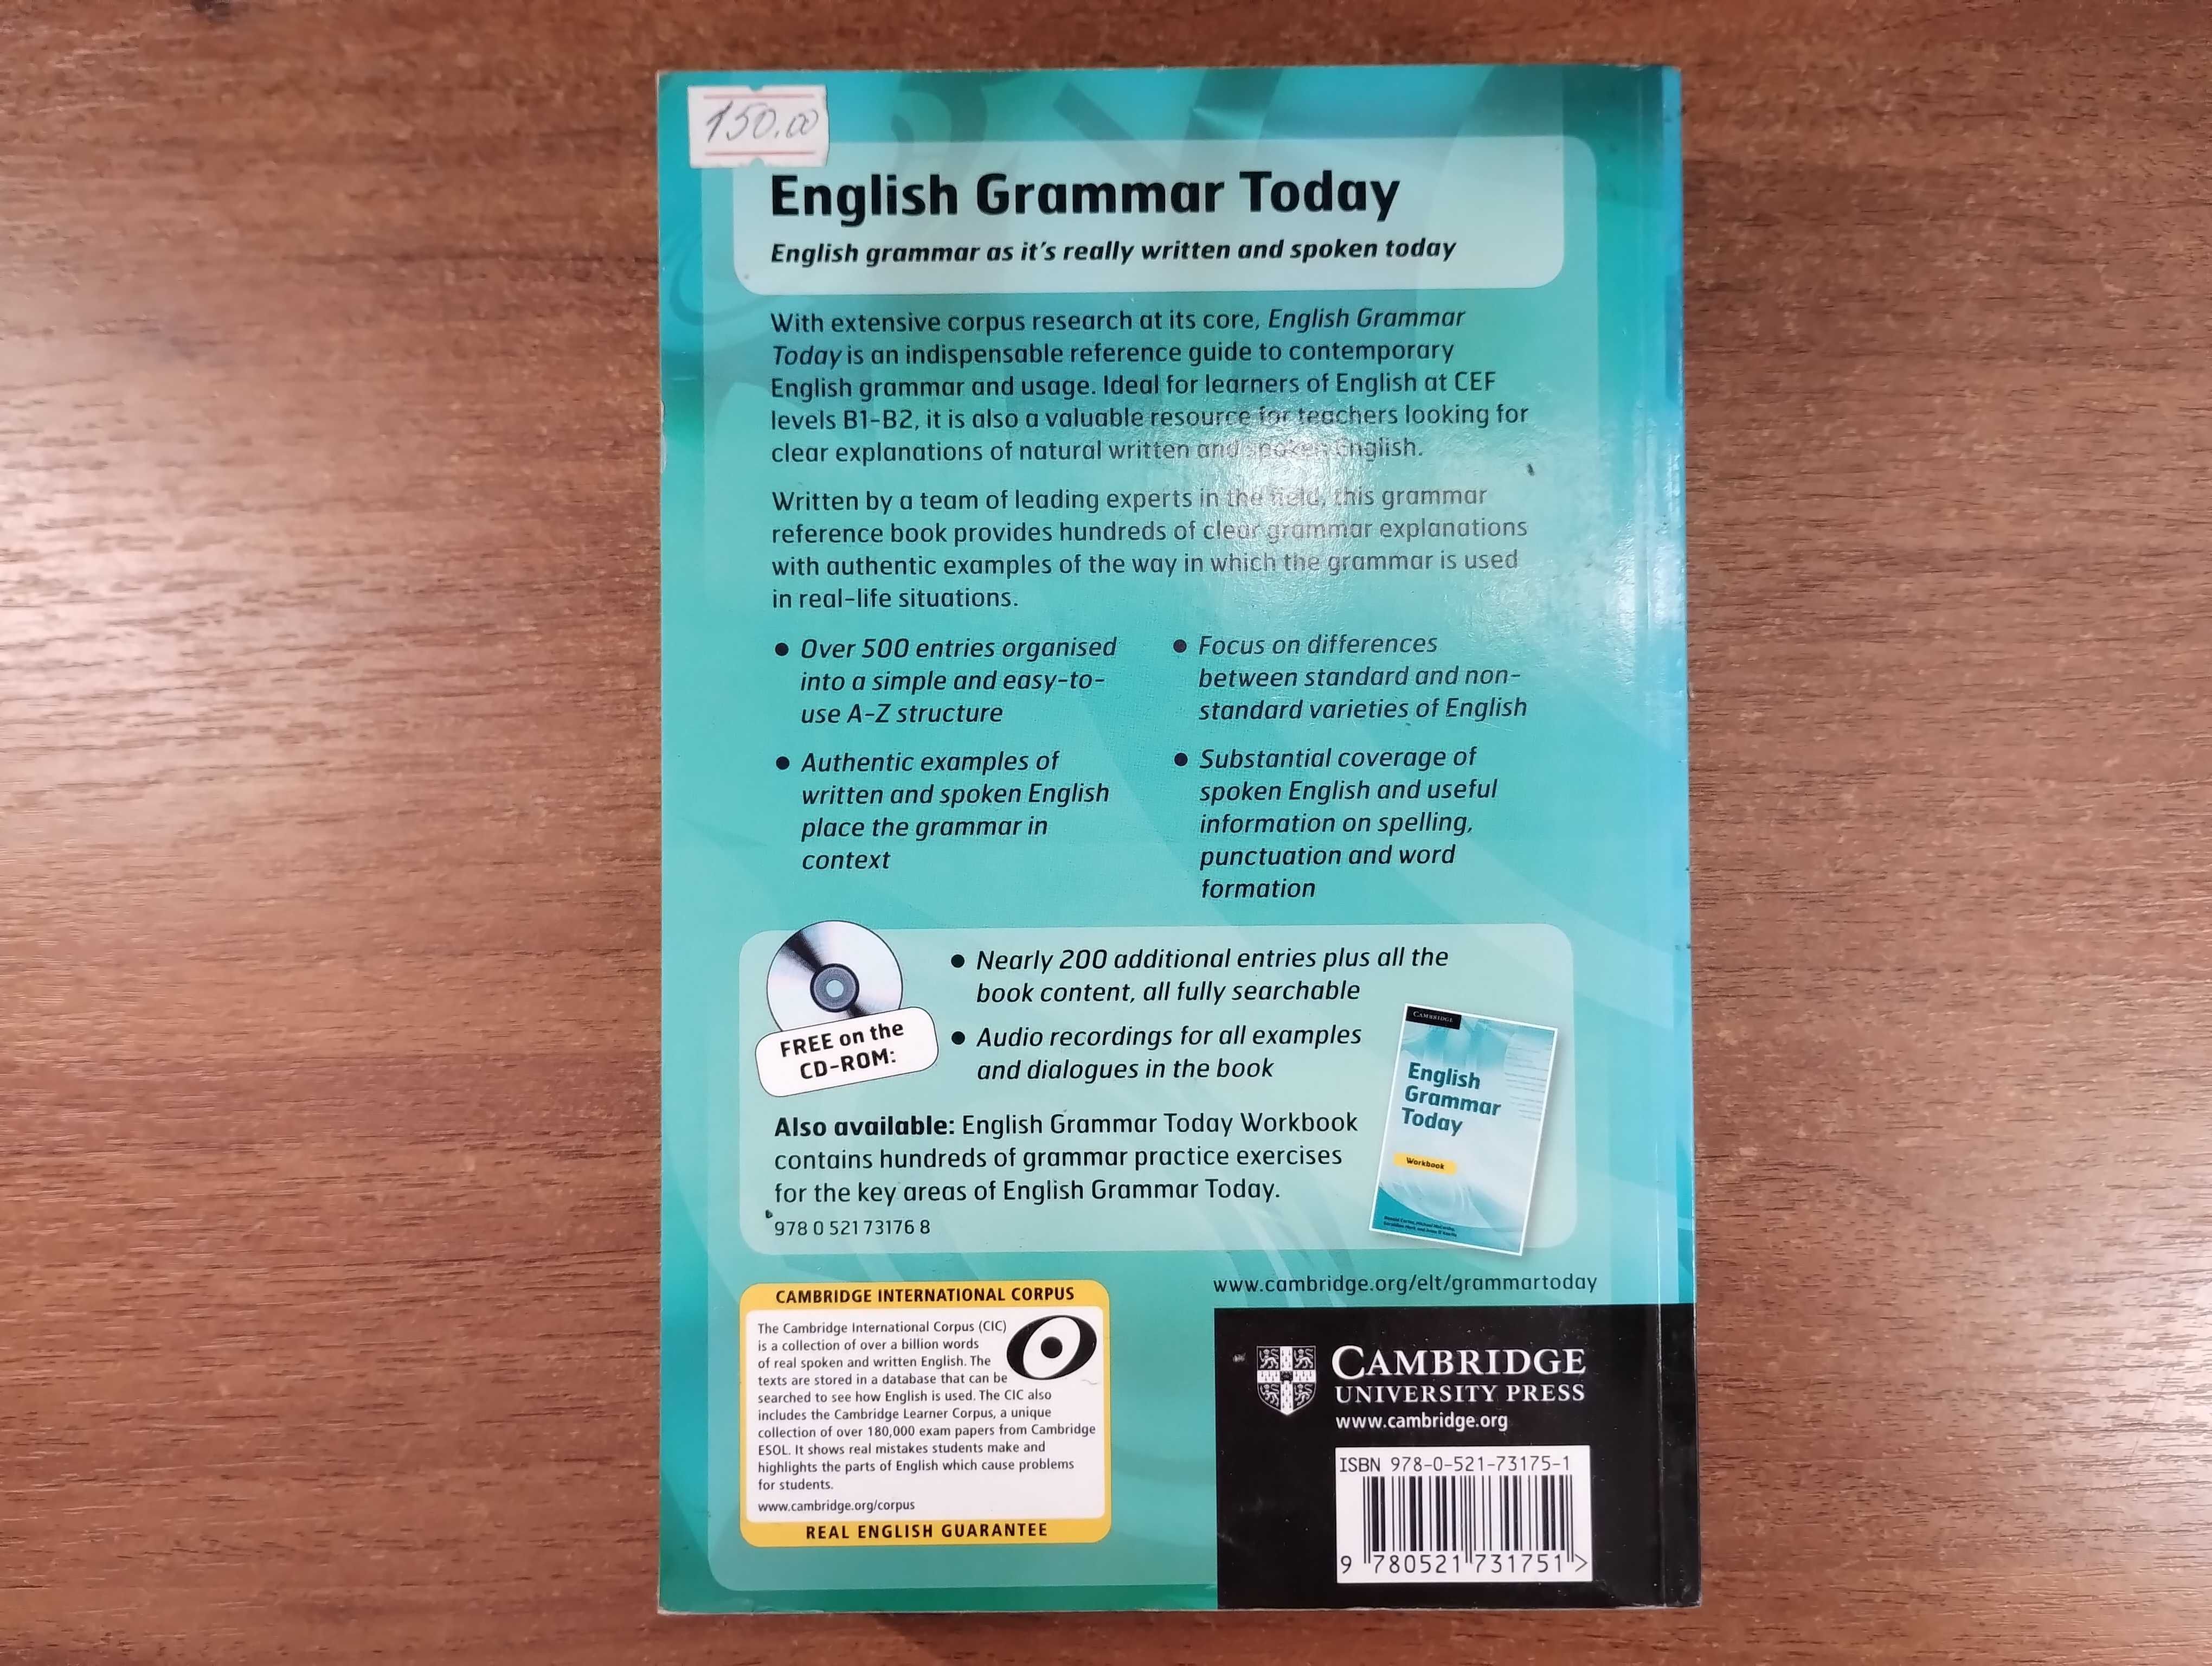 English Grammar Today + CD (Camdridge, Ronald Carter)